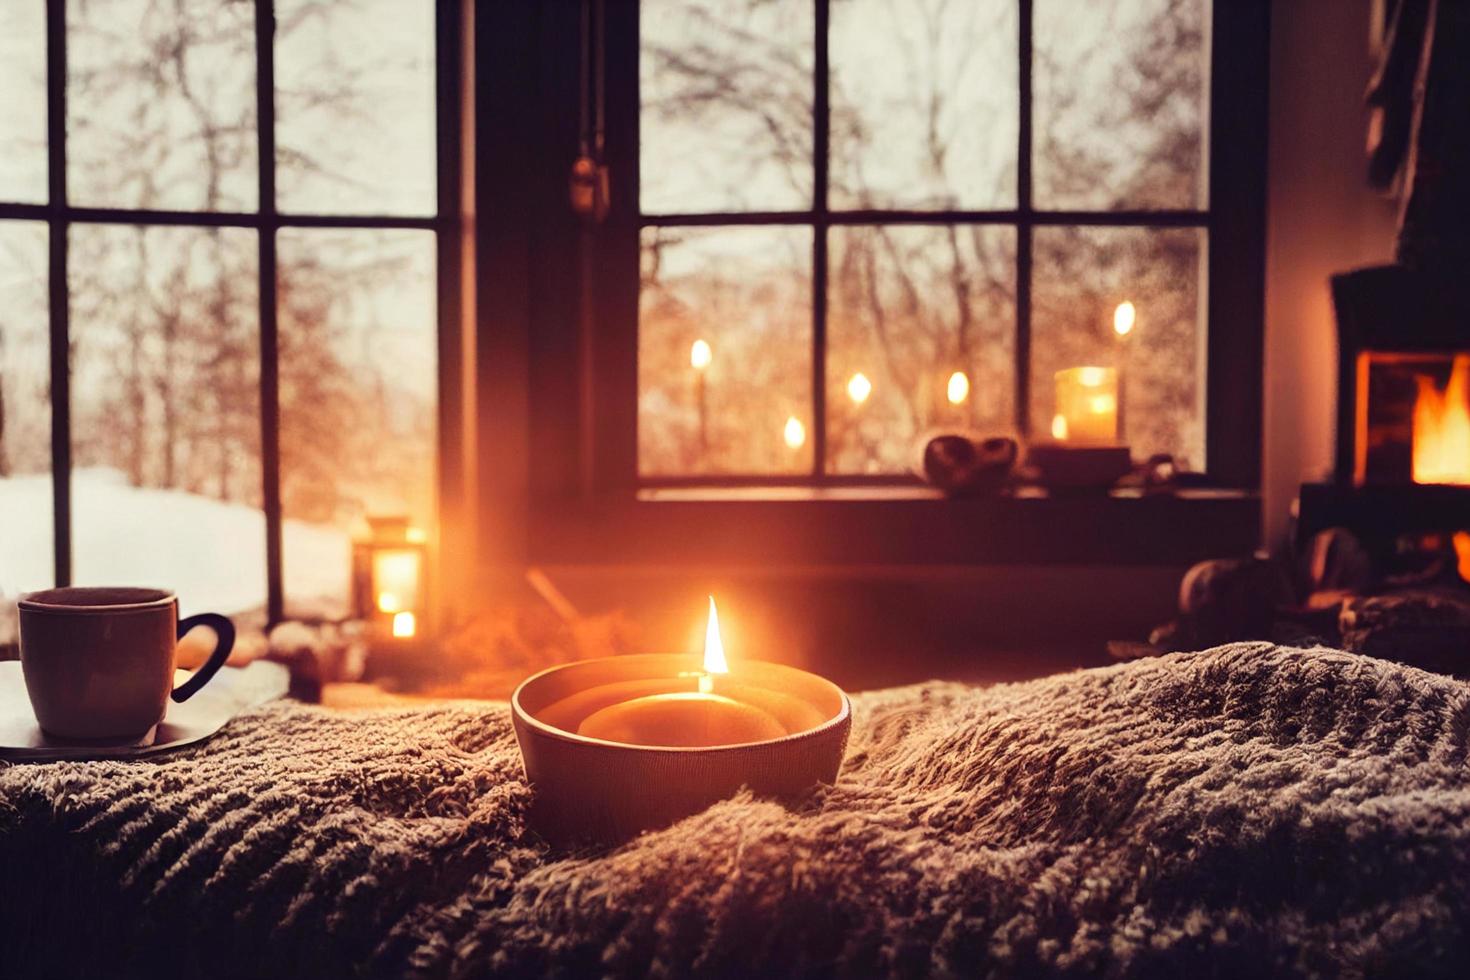 agréable matinée d'hiver à la maison. thé chaud au citron, chandails tricotés et détails intérieurs métalliques modernes. composition de nature morte, concept hygge danois photo